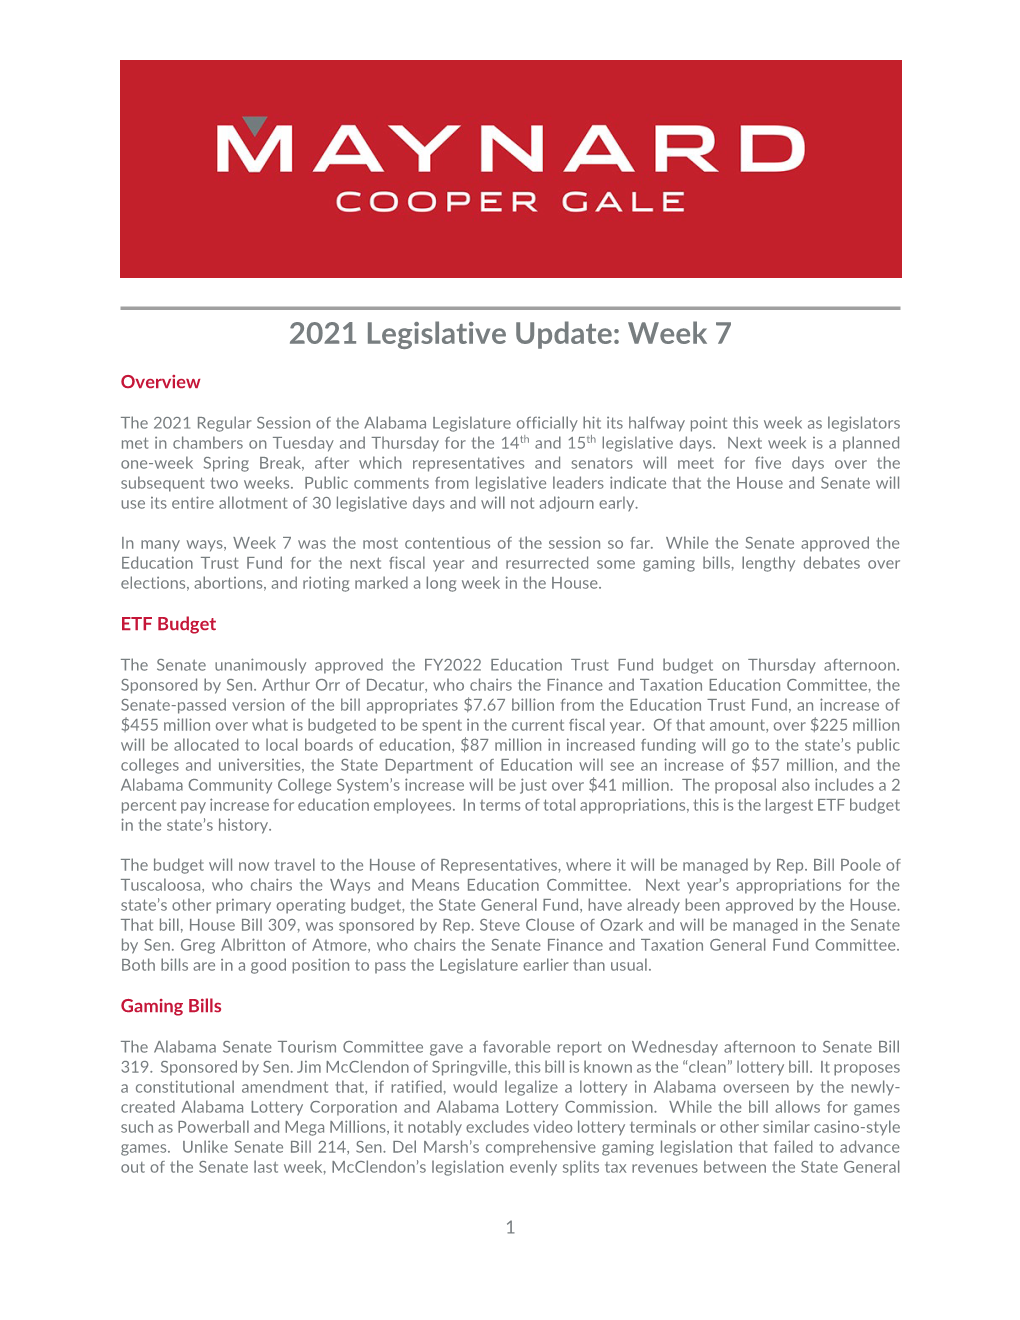 2021 Legislative Update Week 7